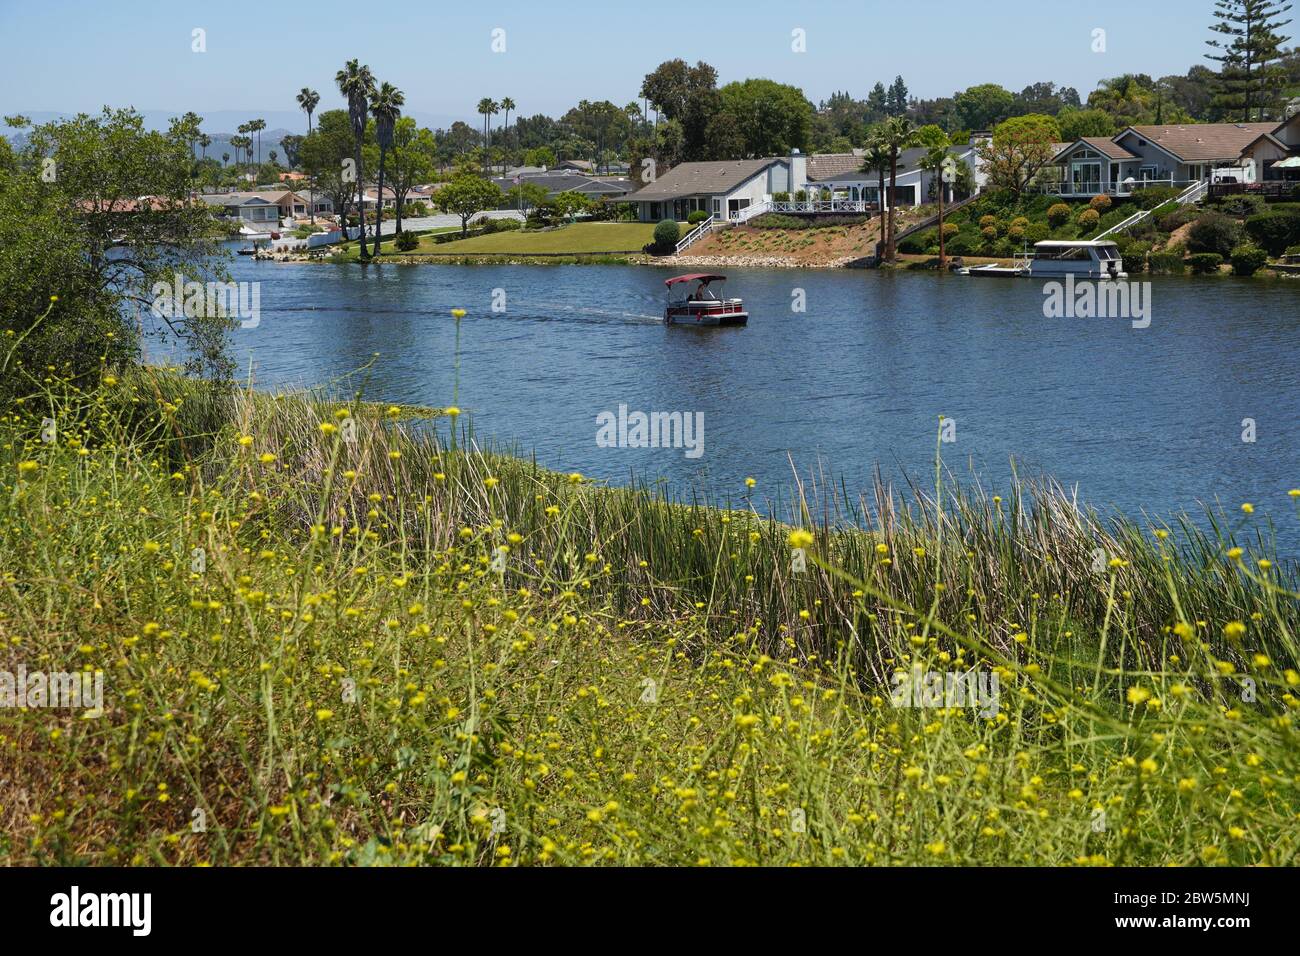 Ponton en bateau qui descend le lac San Marcos en passant devant des résidences un après-midi ensoleillé, vu d'un rivage rempli de fleurs sauvages jaunes. Banque D'Images